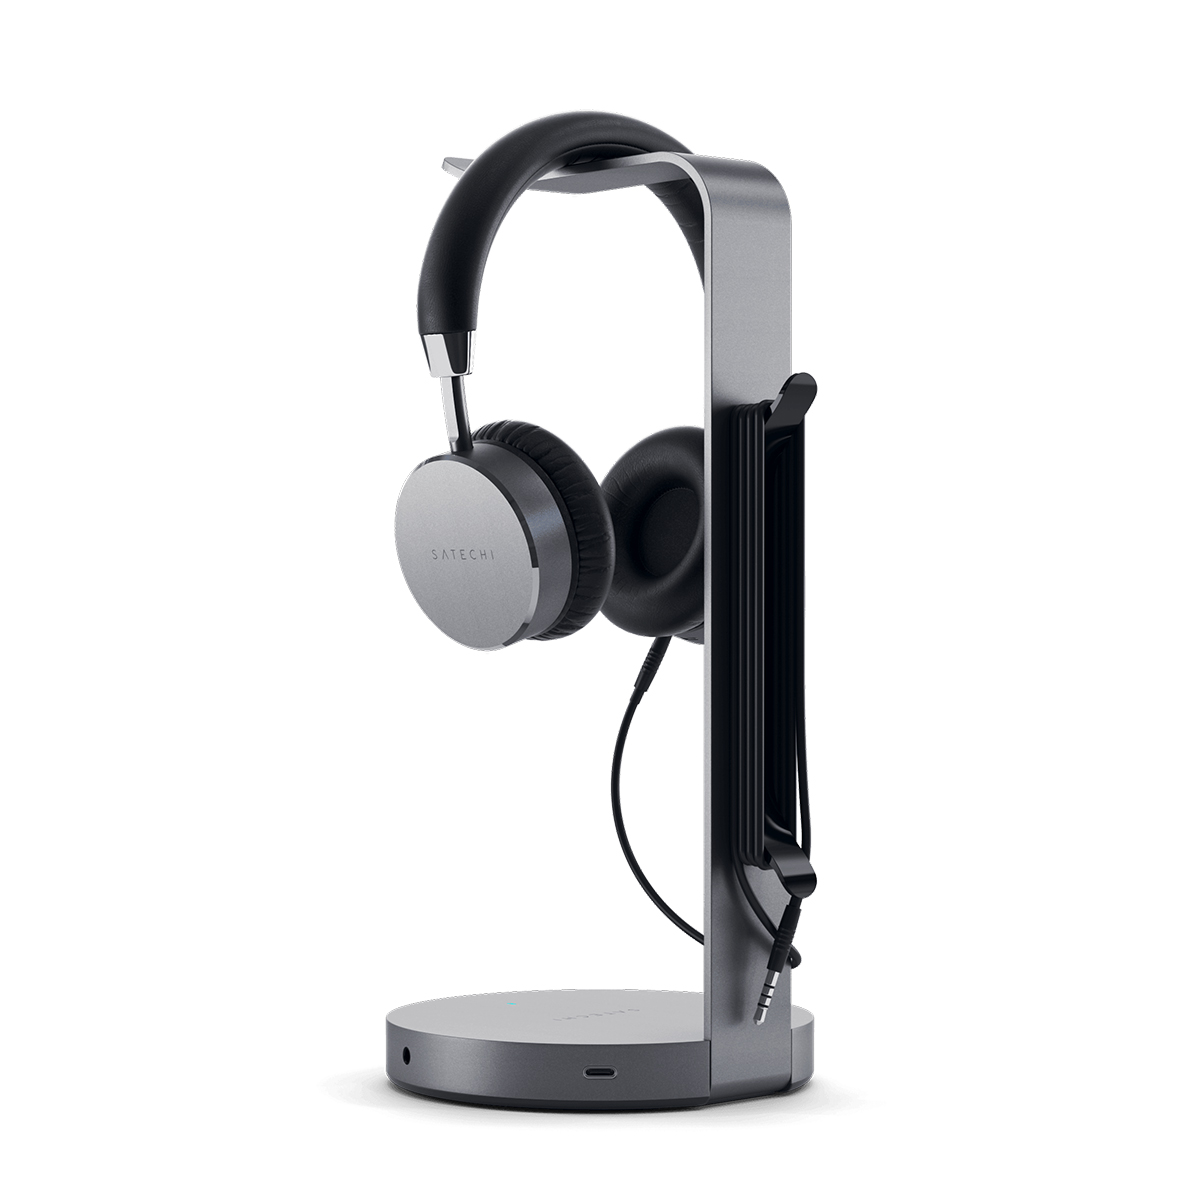 Giá đỡ tai nghe Satechi USB Headphone Stand